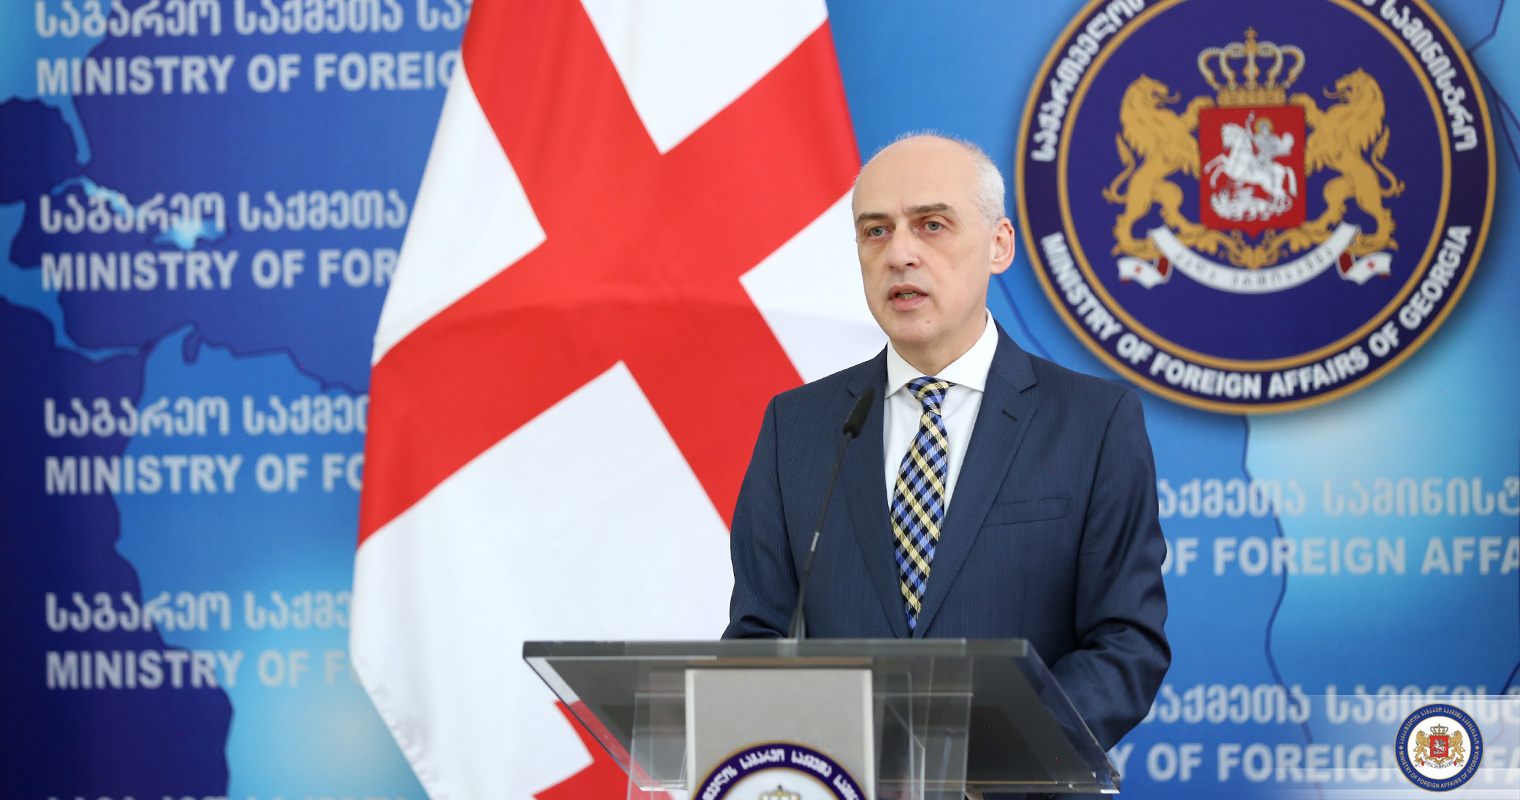 რუსეთის ფედერაცია ვალდებულია პატივი სცეს საერთაშორისო სამართლის ნორმებს - დავით ზალკალიანი